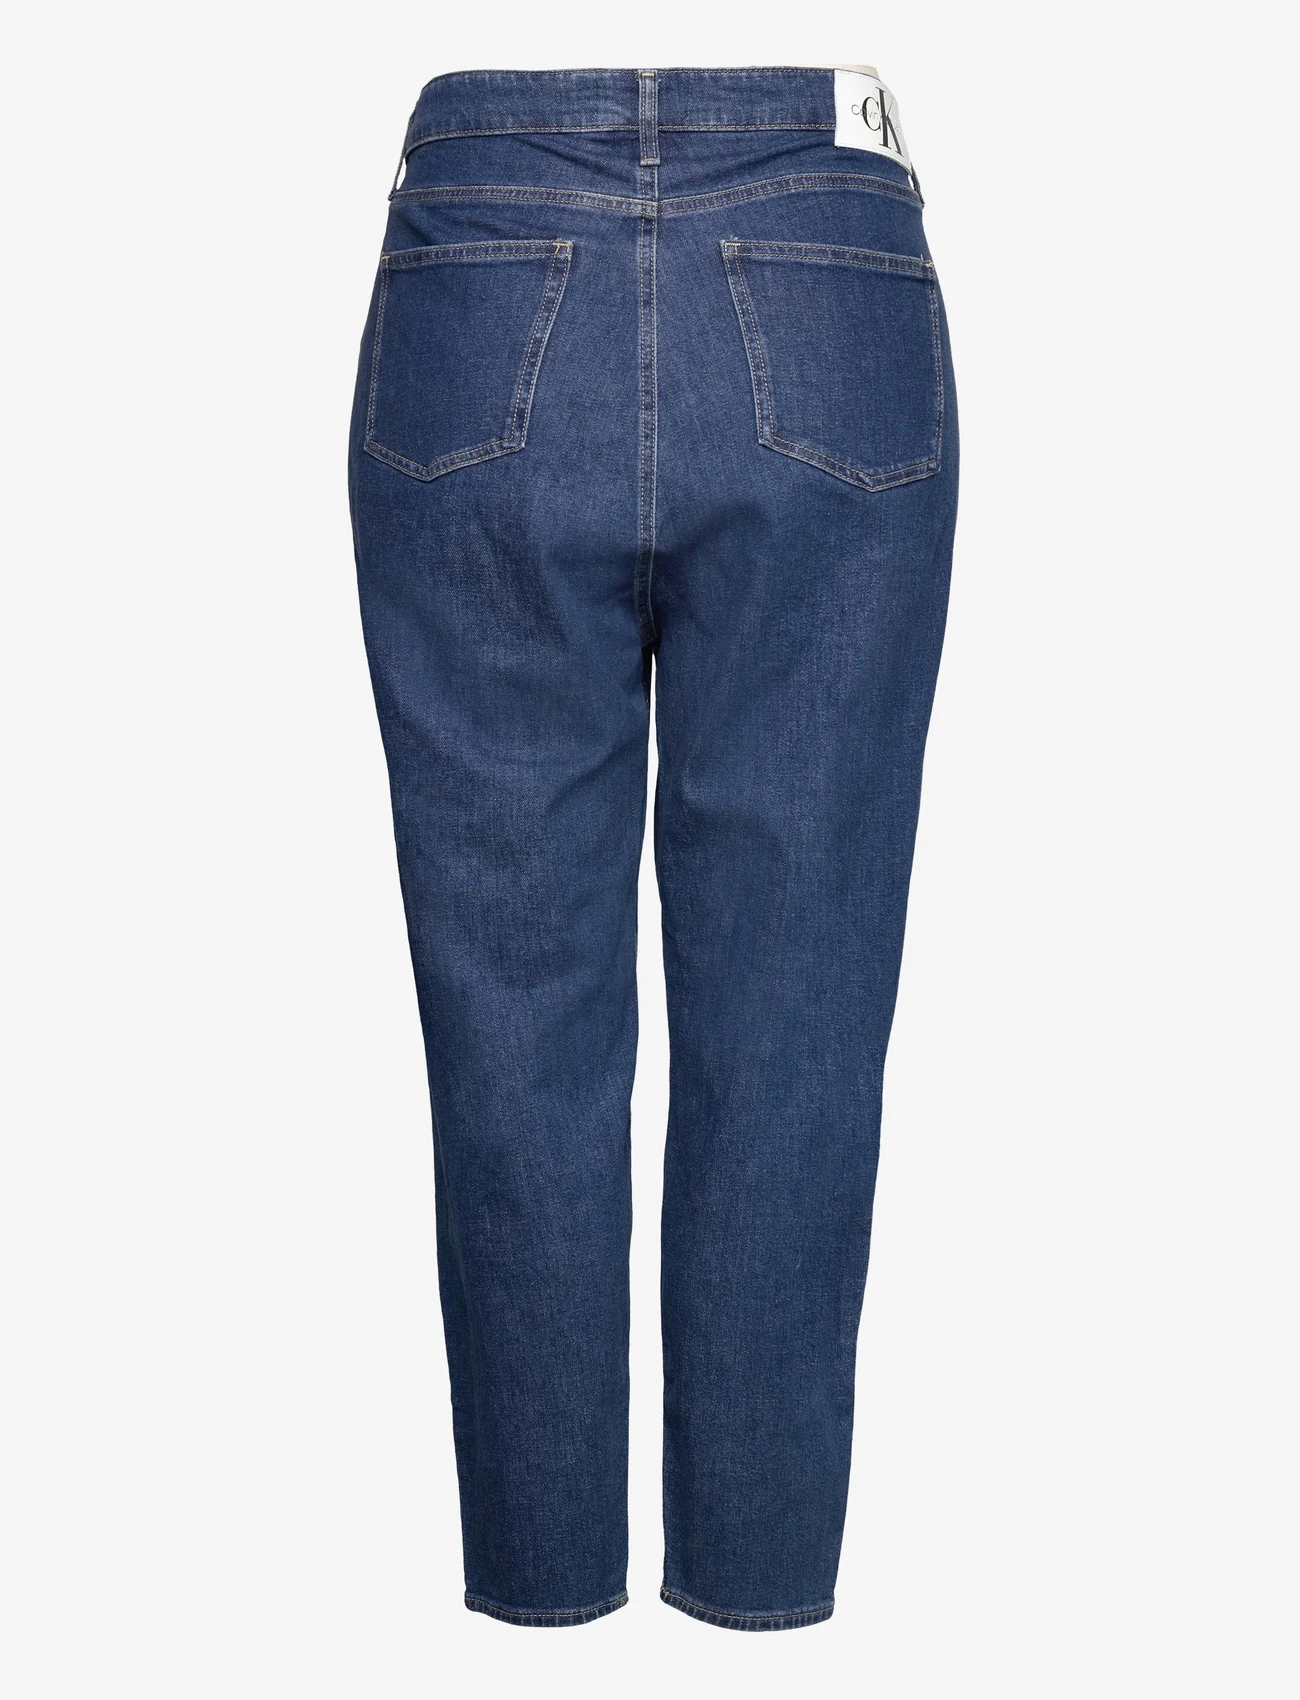 Calvin Klein Jeans - MOM JEAN PLUS - mamų džinsai - denim medium - 1